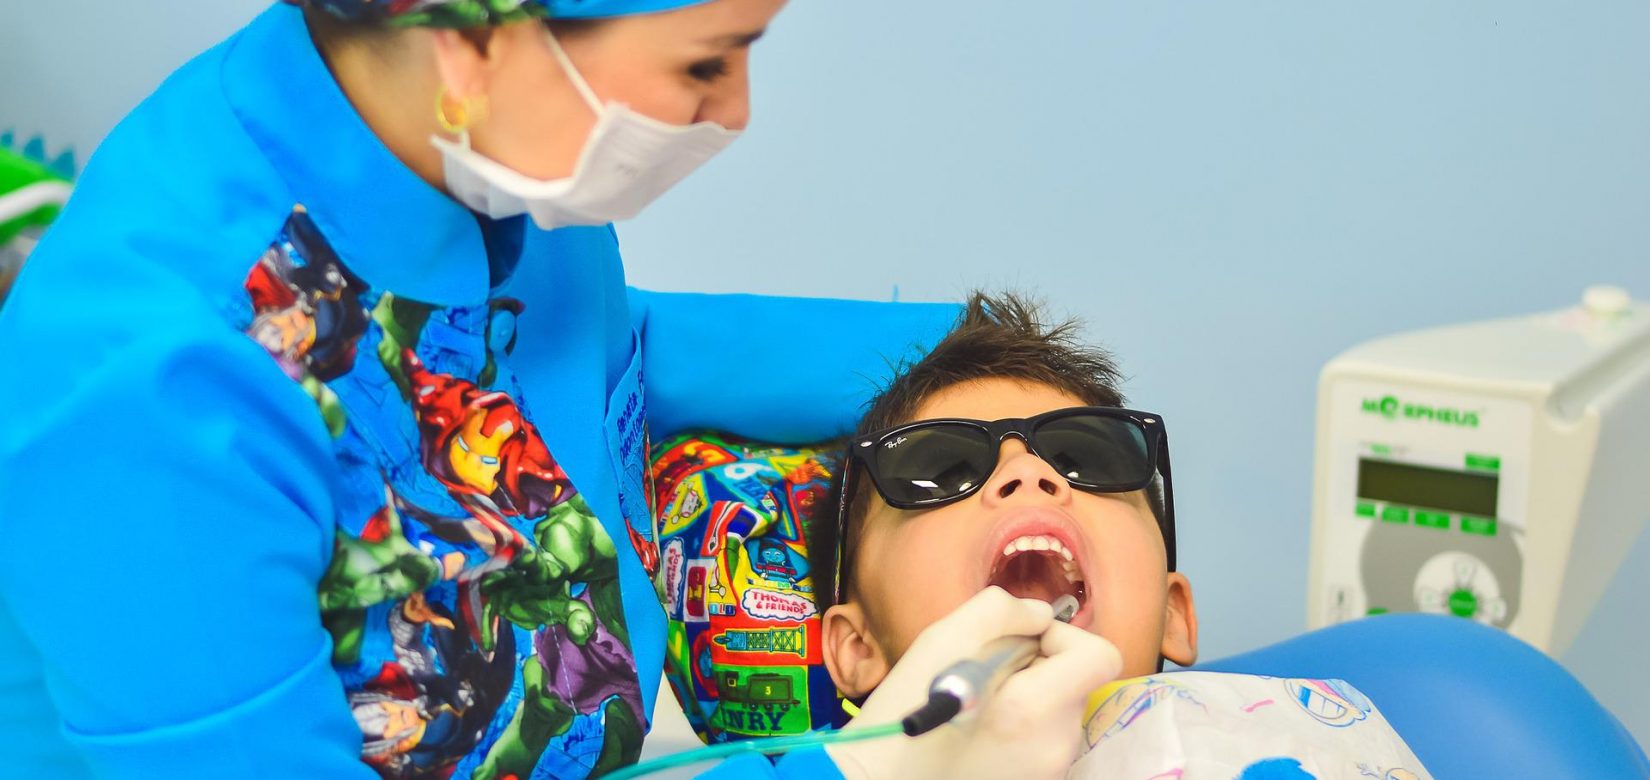 Dentist Pass για παιδιά: Πώς θα κάνετε αίτηση για να λάβετε το κουπόνι 40 ευρώ